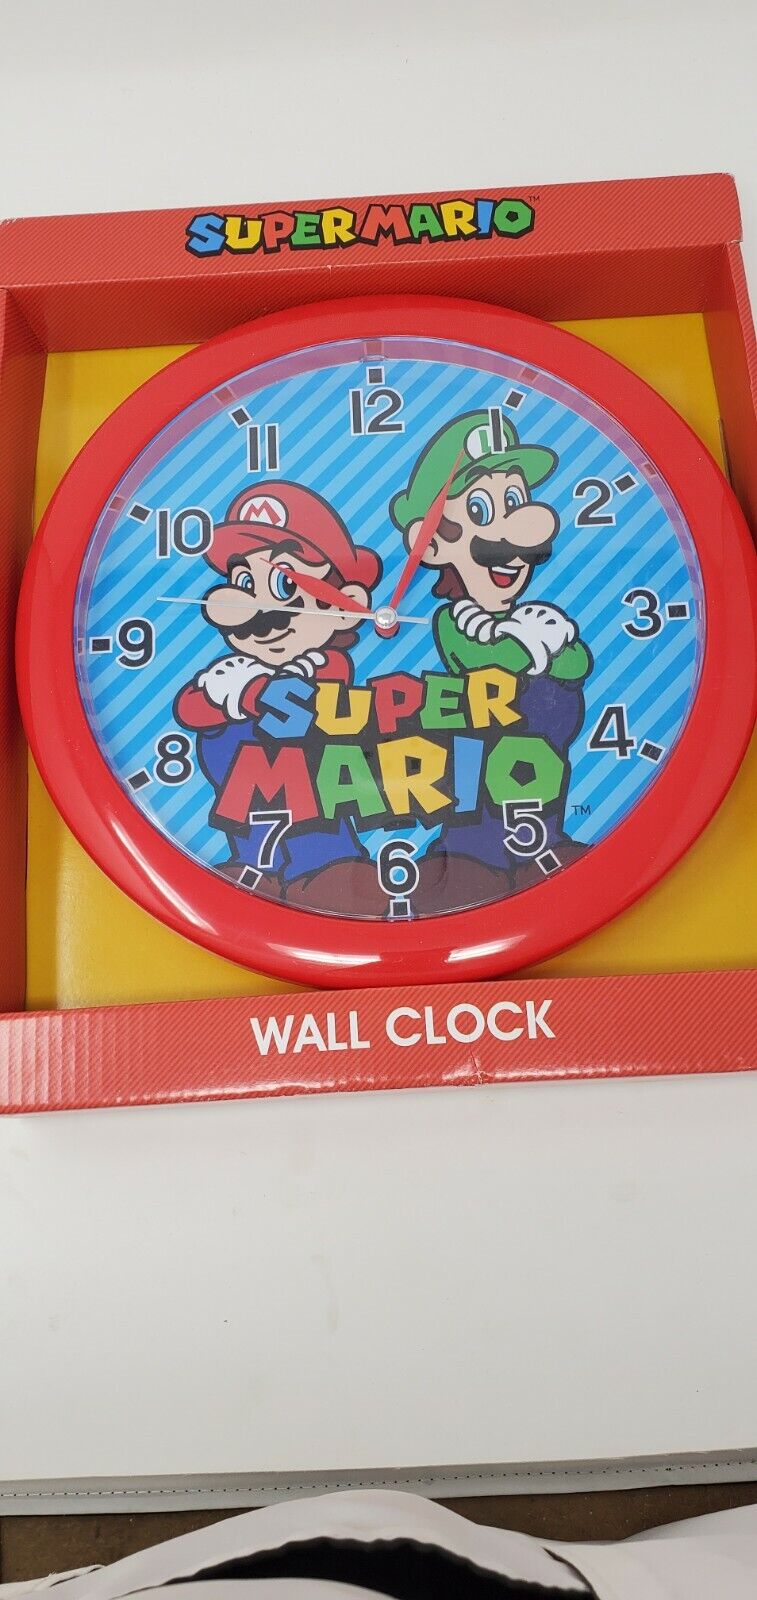 Super mario wall clock